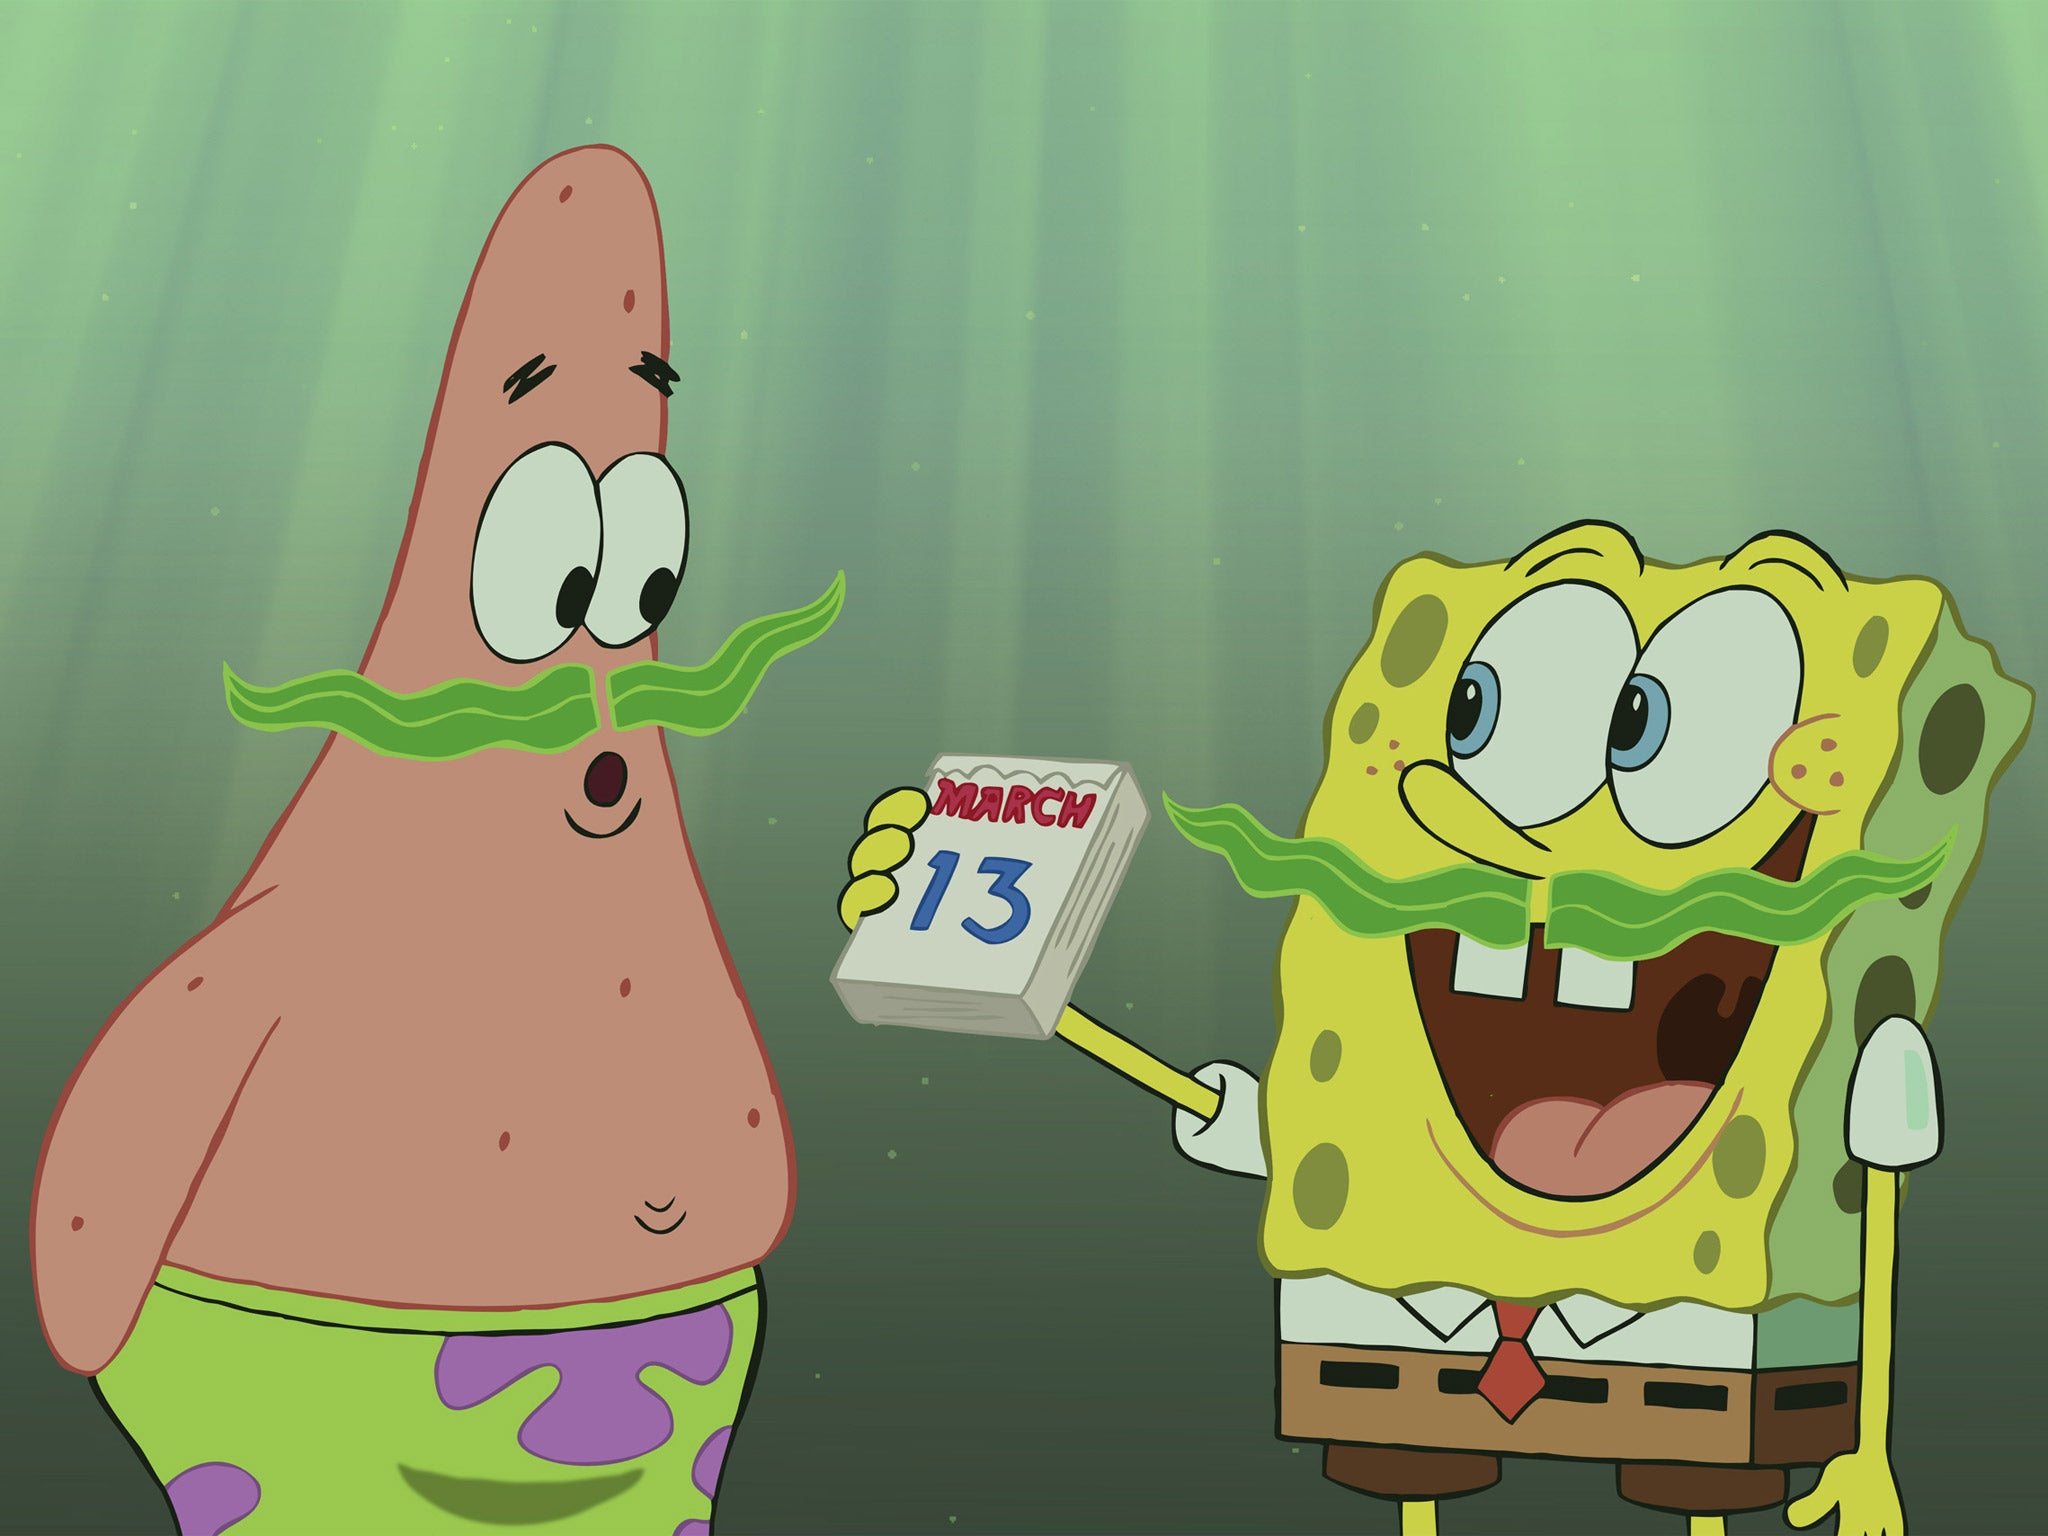 Patrick and SpongeBob SquarePants